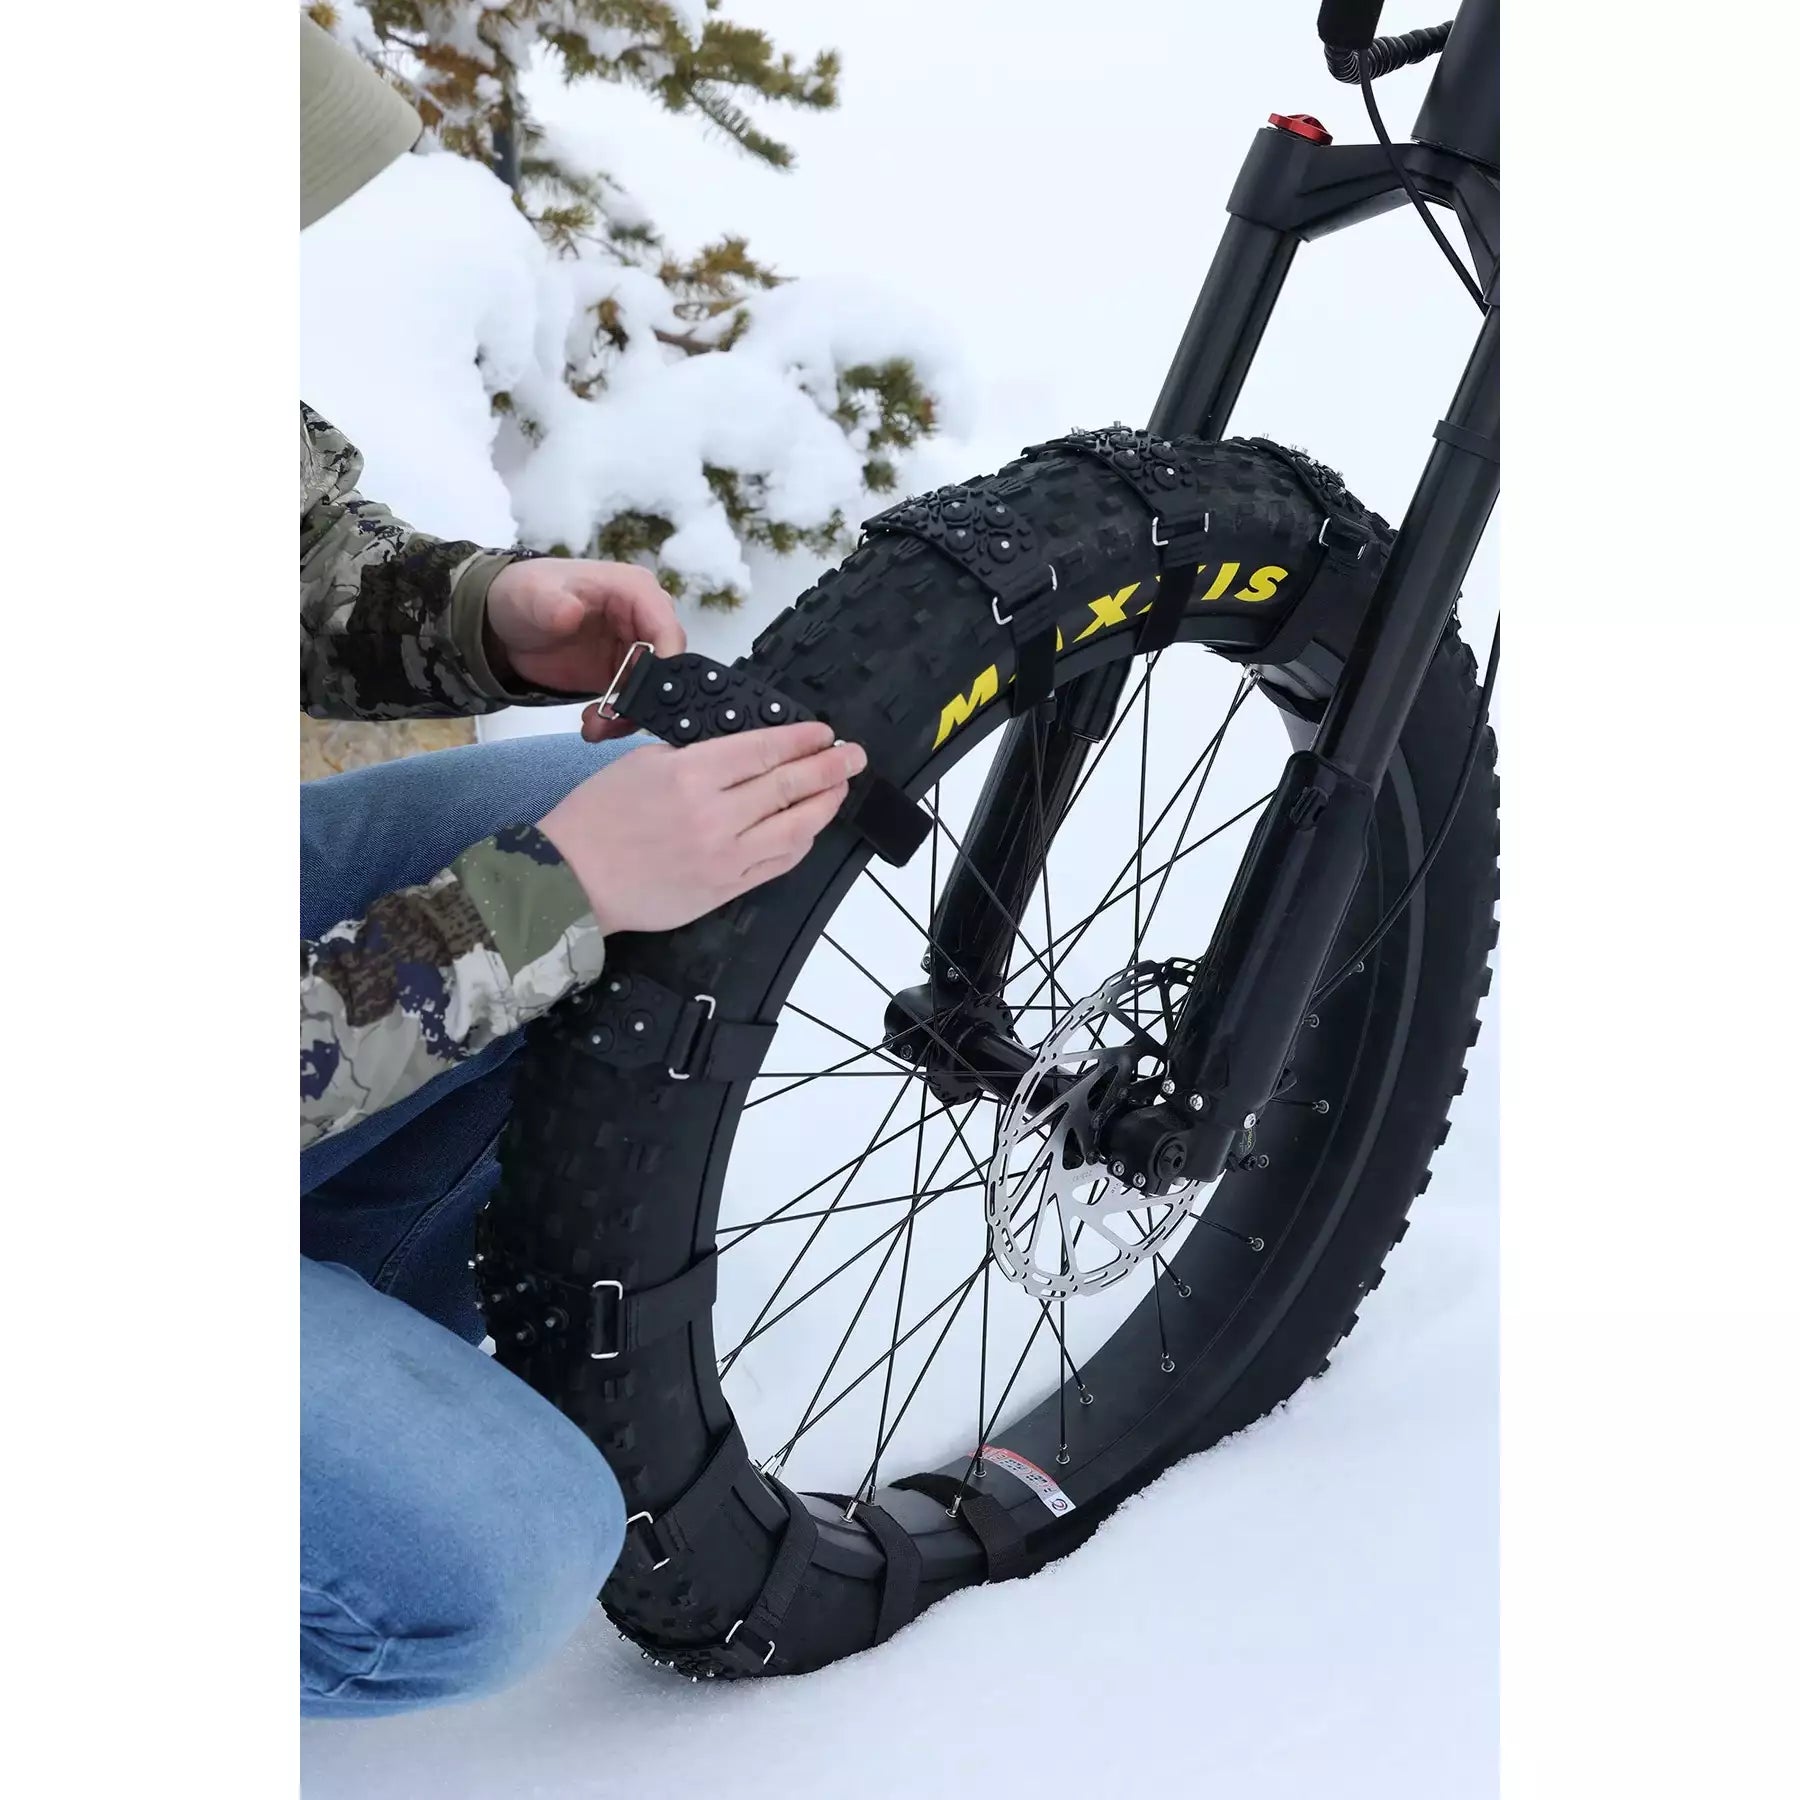 Fat Tire Snow Straps